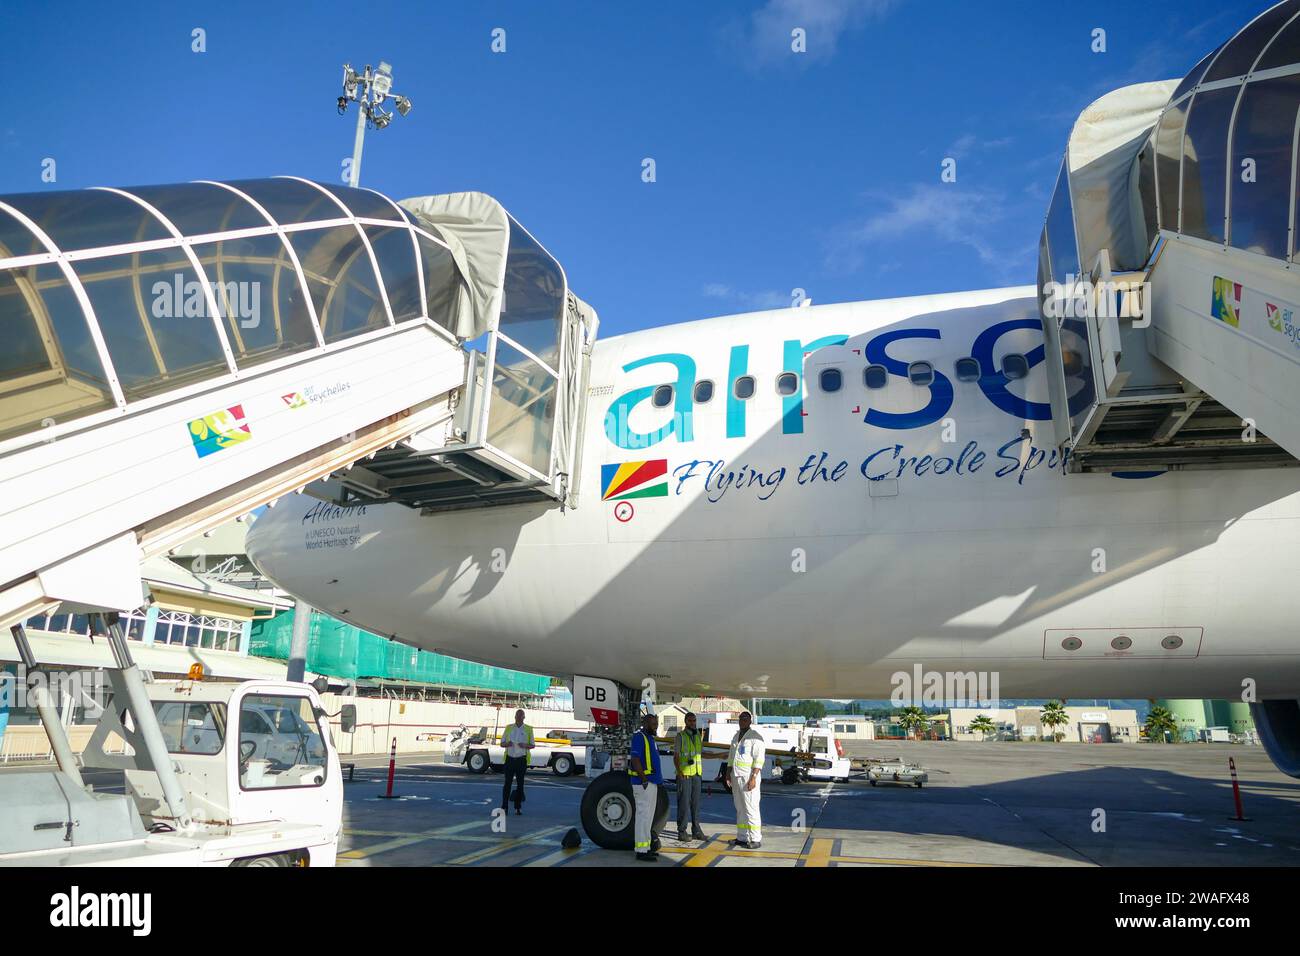 Mahé, Seychelles - avril 14 2017 : avion Air Seychelles à l'aéroport international des Seychelles sur l'île de Mahé Banque D'Images